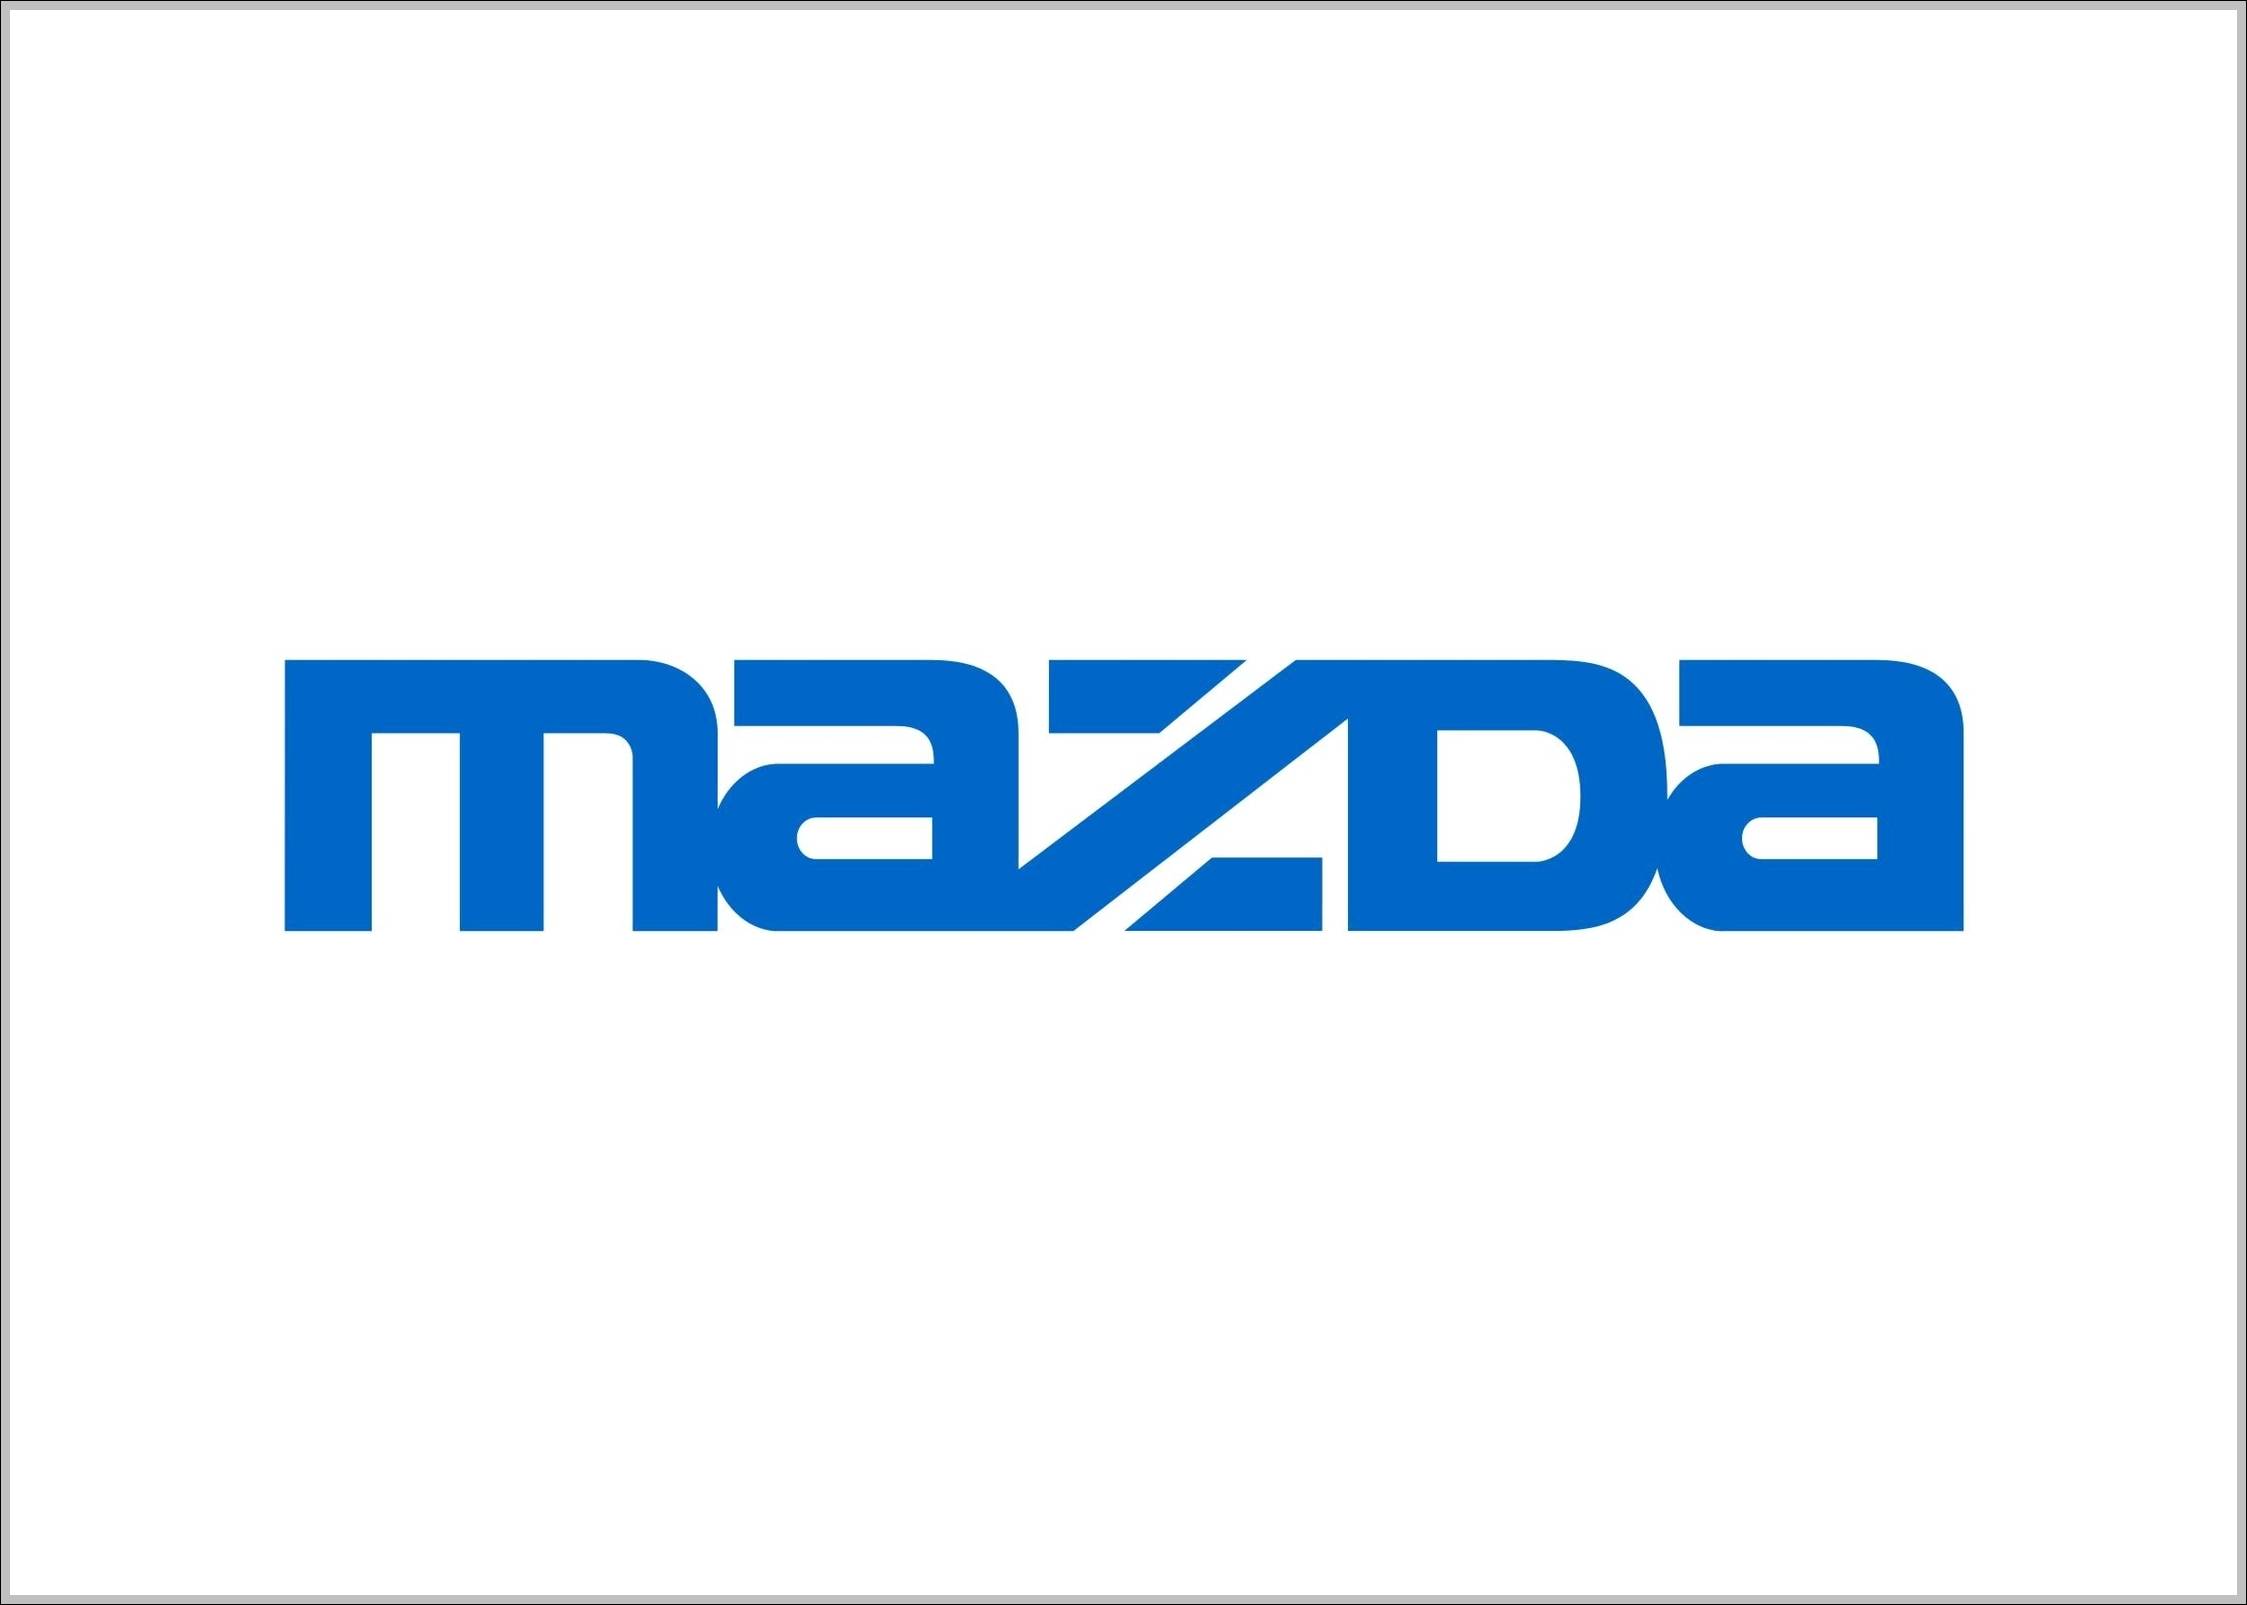 Mazda sign